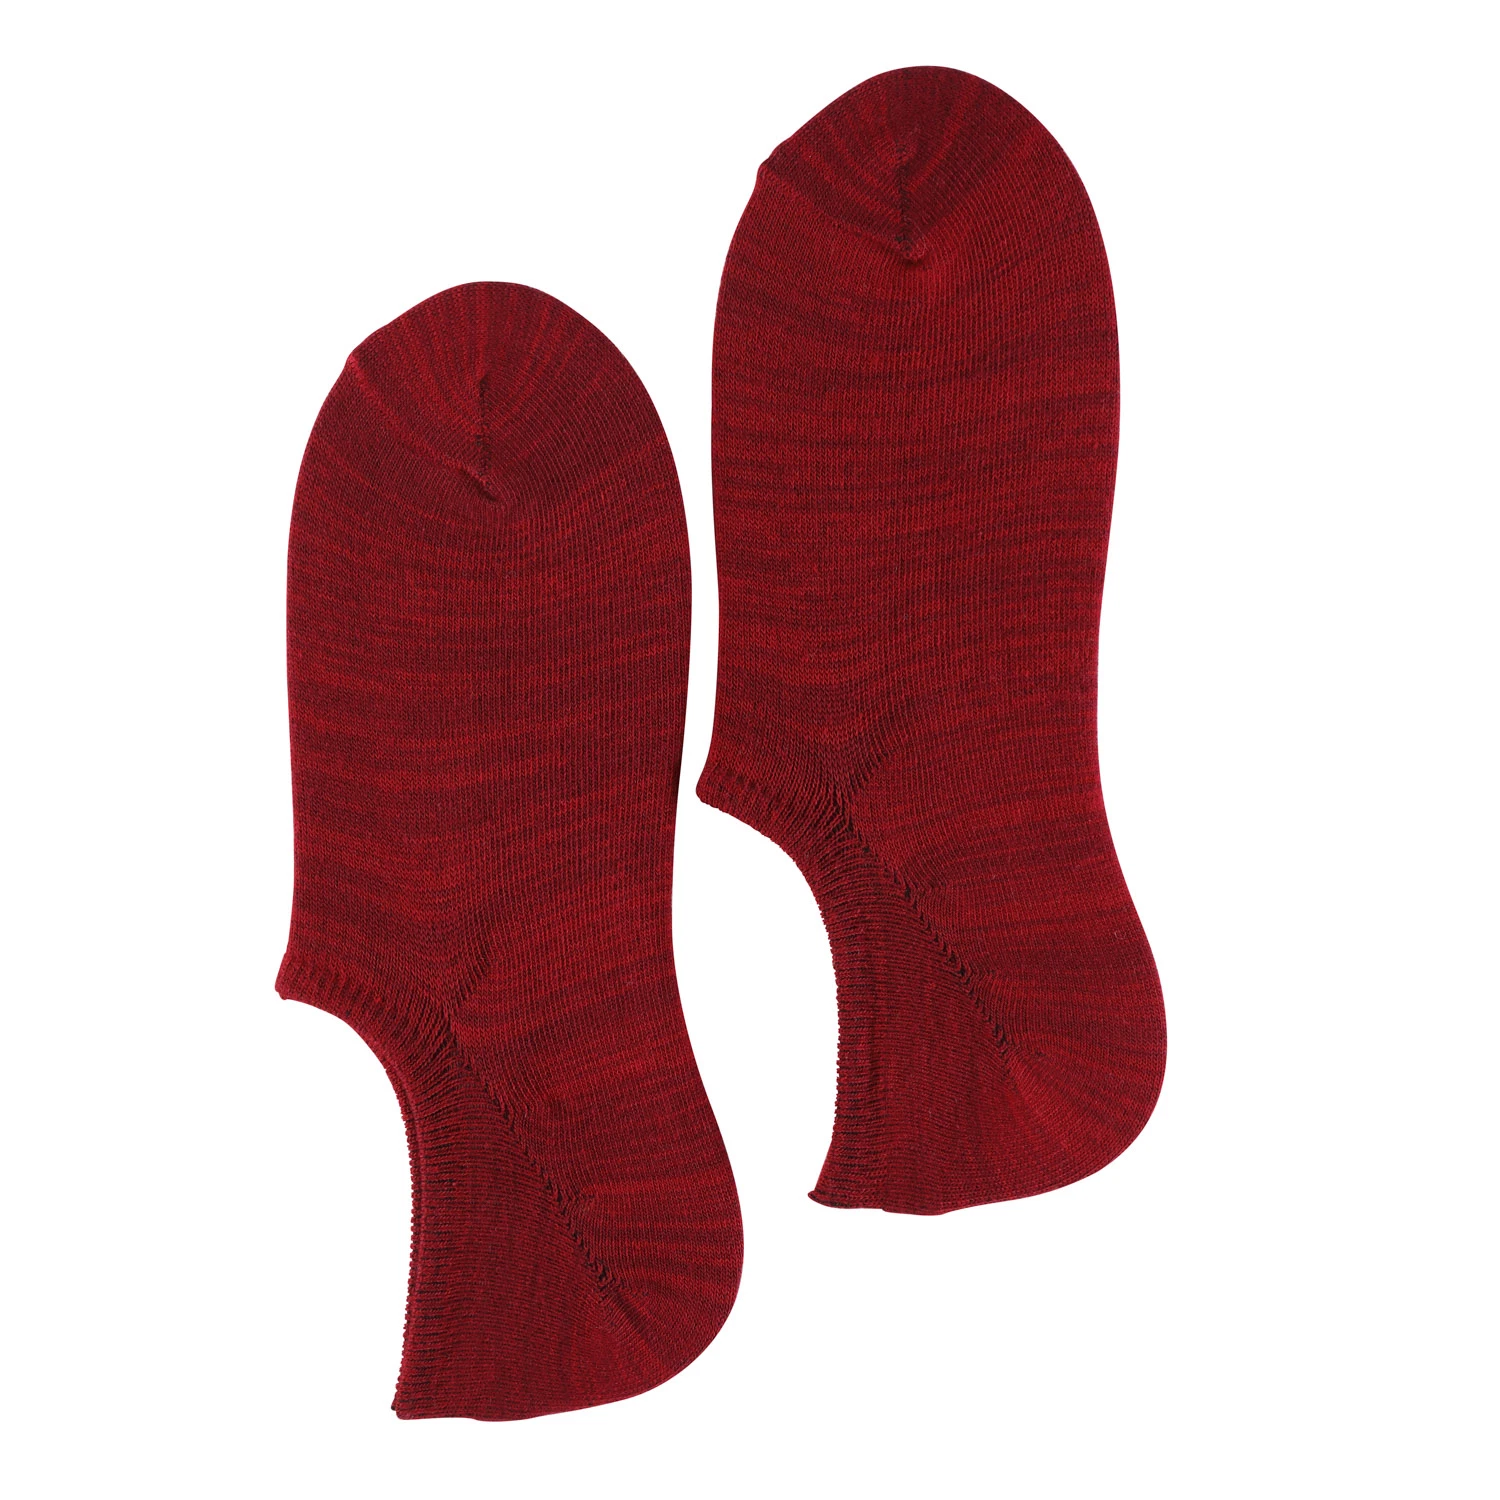 Stripe Socks Thin Short Cotton Ankle Socks for Men All Season